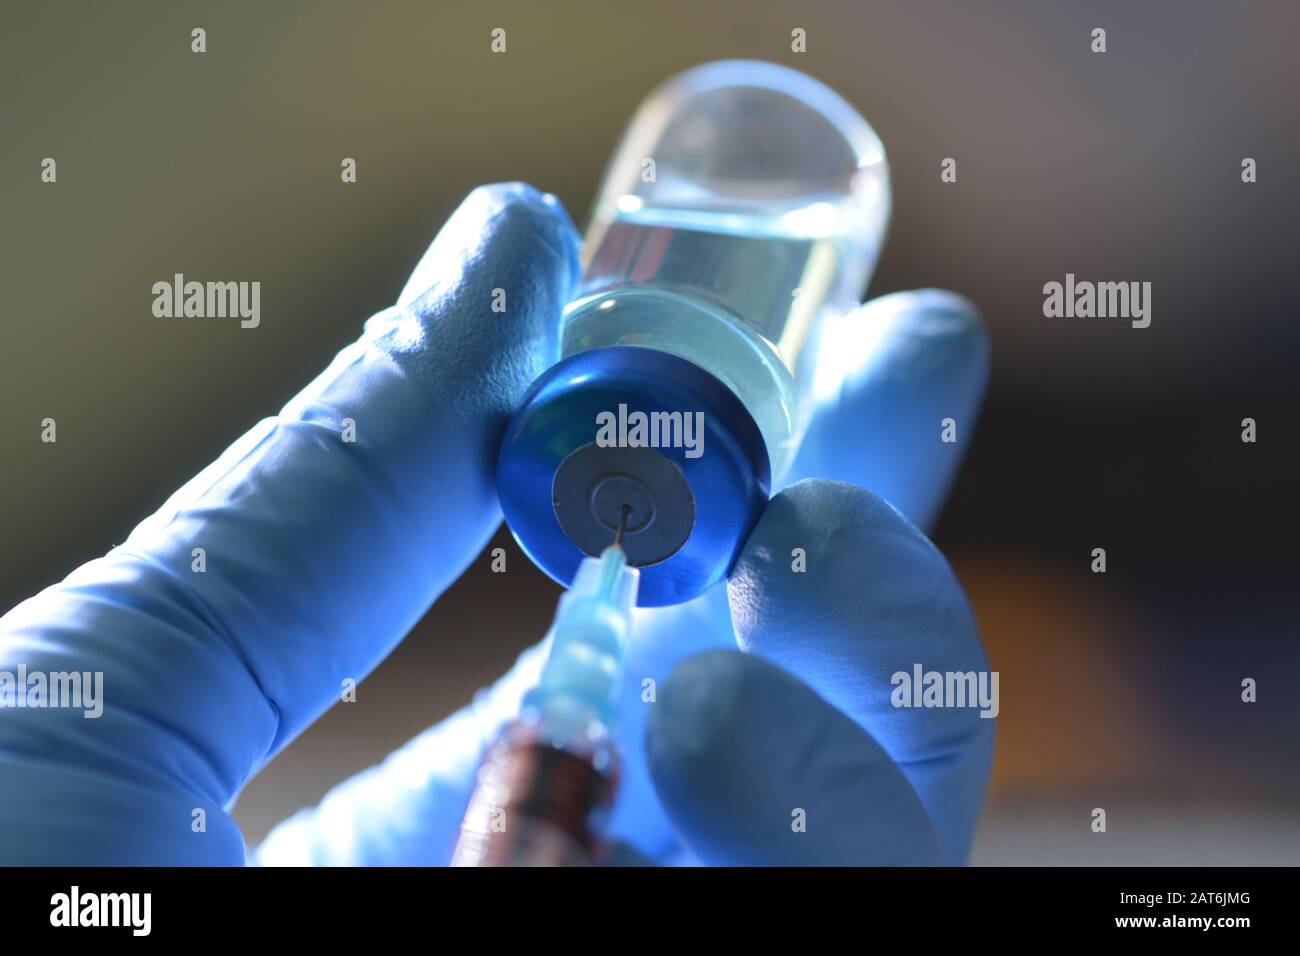 La jeringa extrae el medicamento líquido del vial de color azul en la mano enguantada de la enfermera. Foto de stock